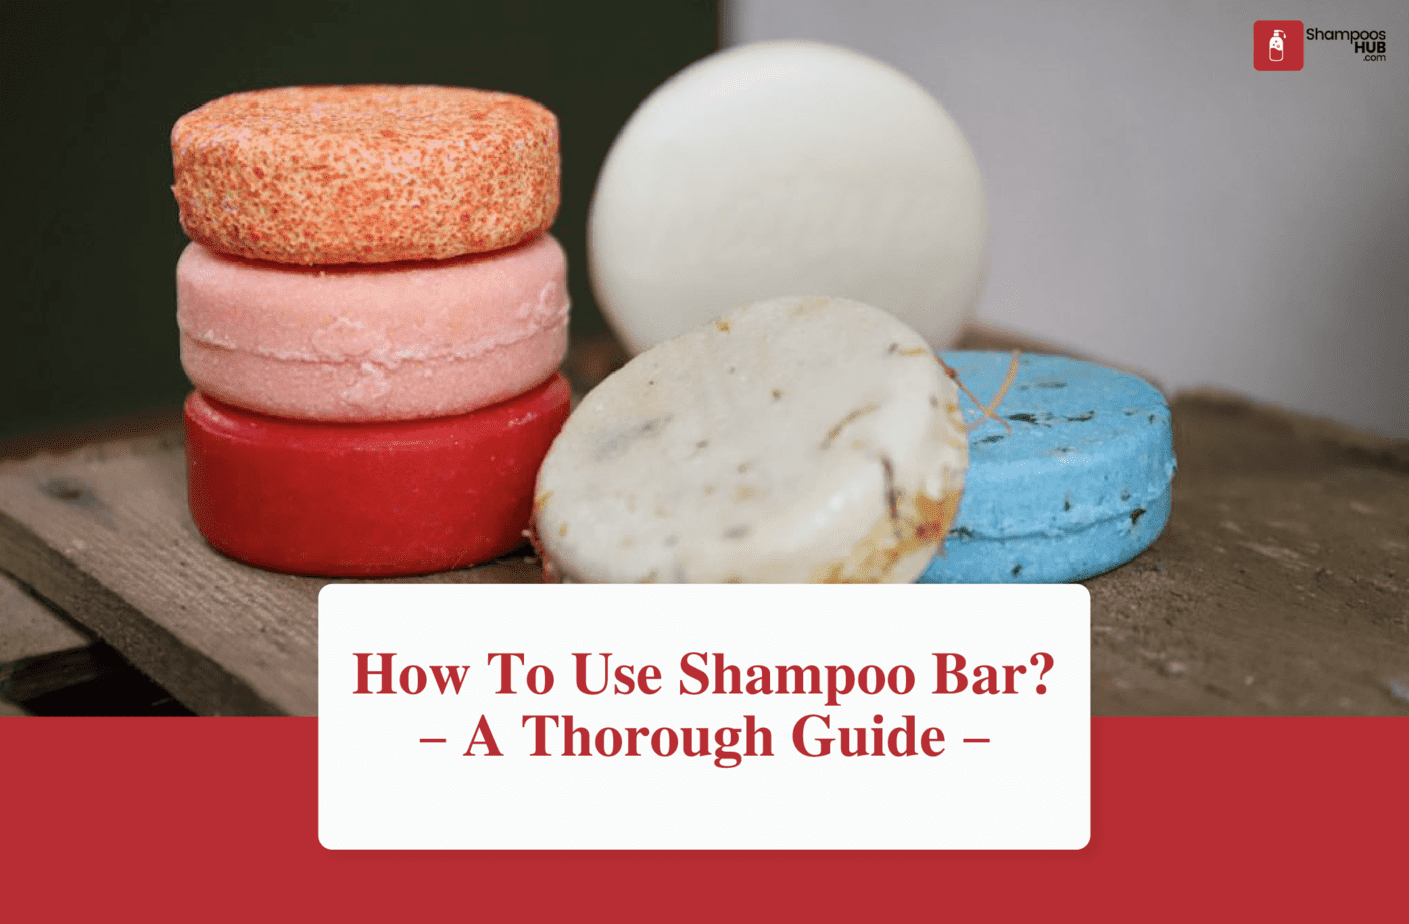 How To Use Shampoo Bar?